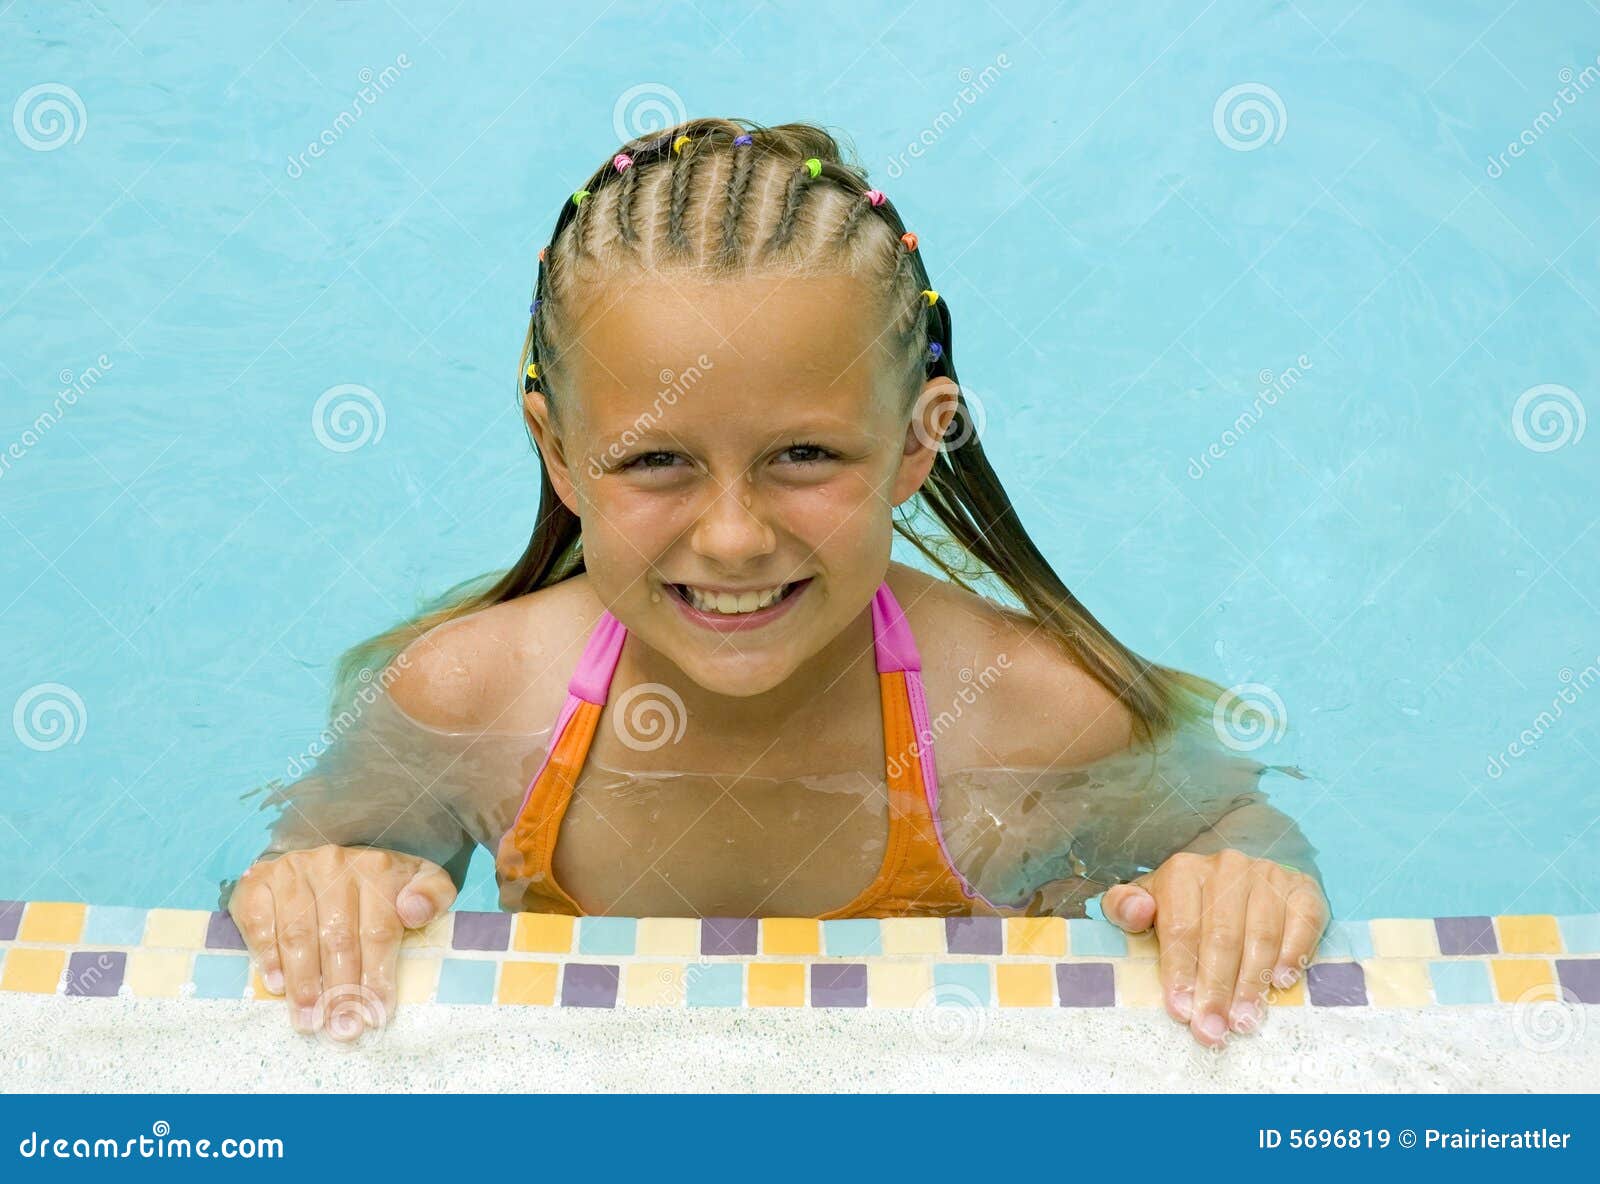 美丽的女孩游泳年轻人 库存照片. 图片 包括有 咧嘴, 乐趣, 蓝色, 作用, 逗人喜爱, 健康, 相当 - 15153944